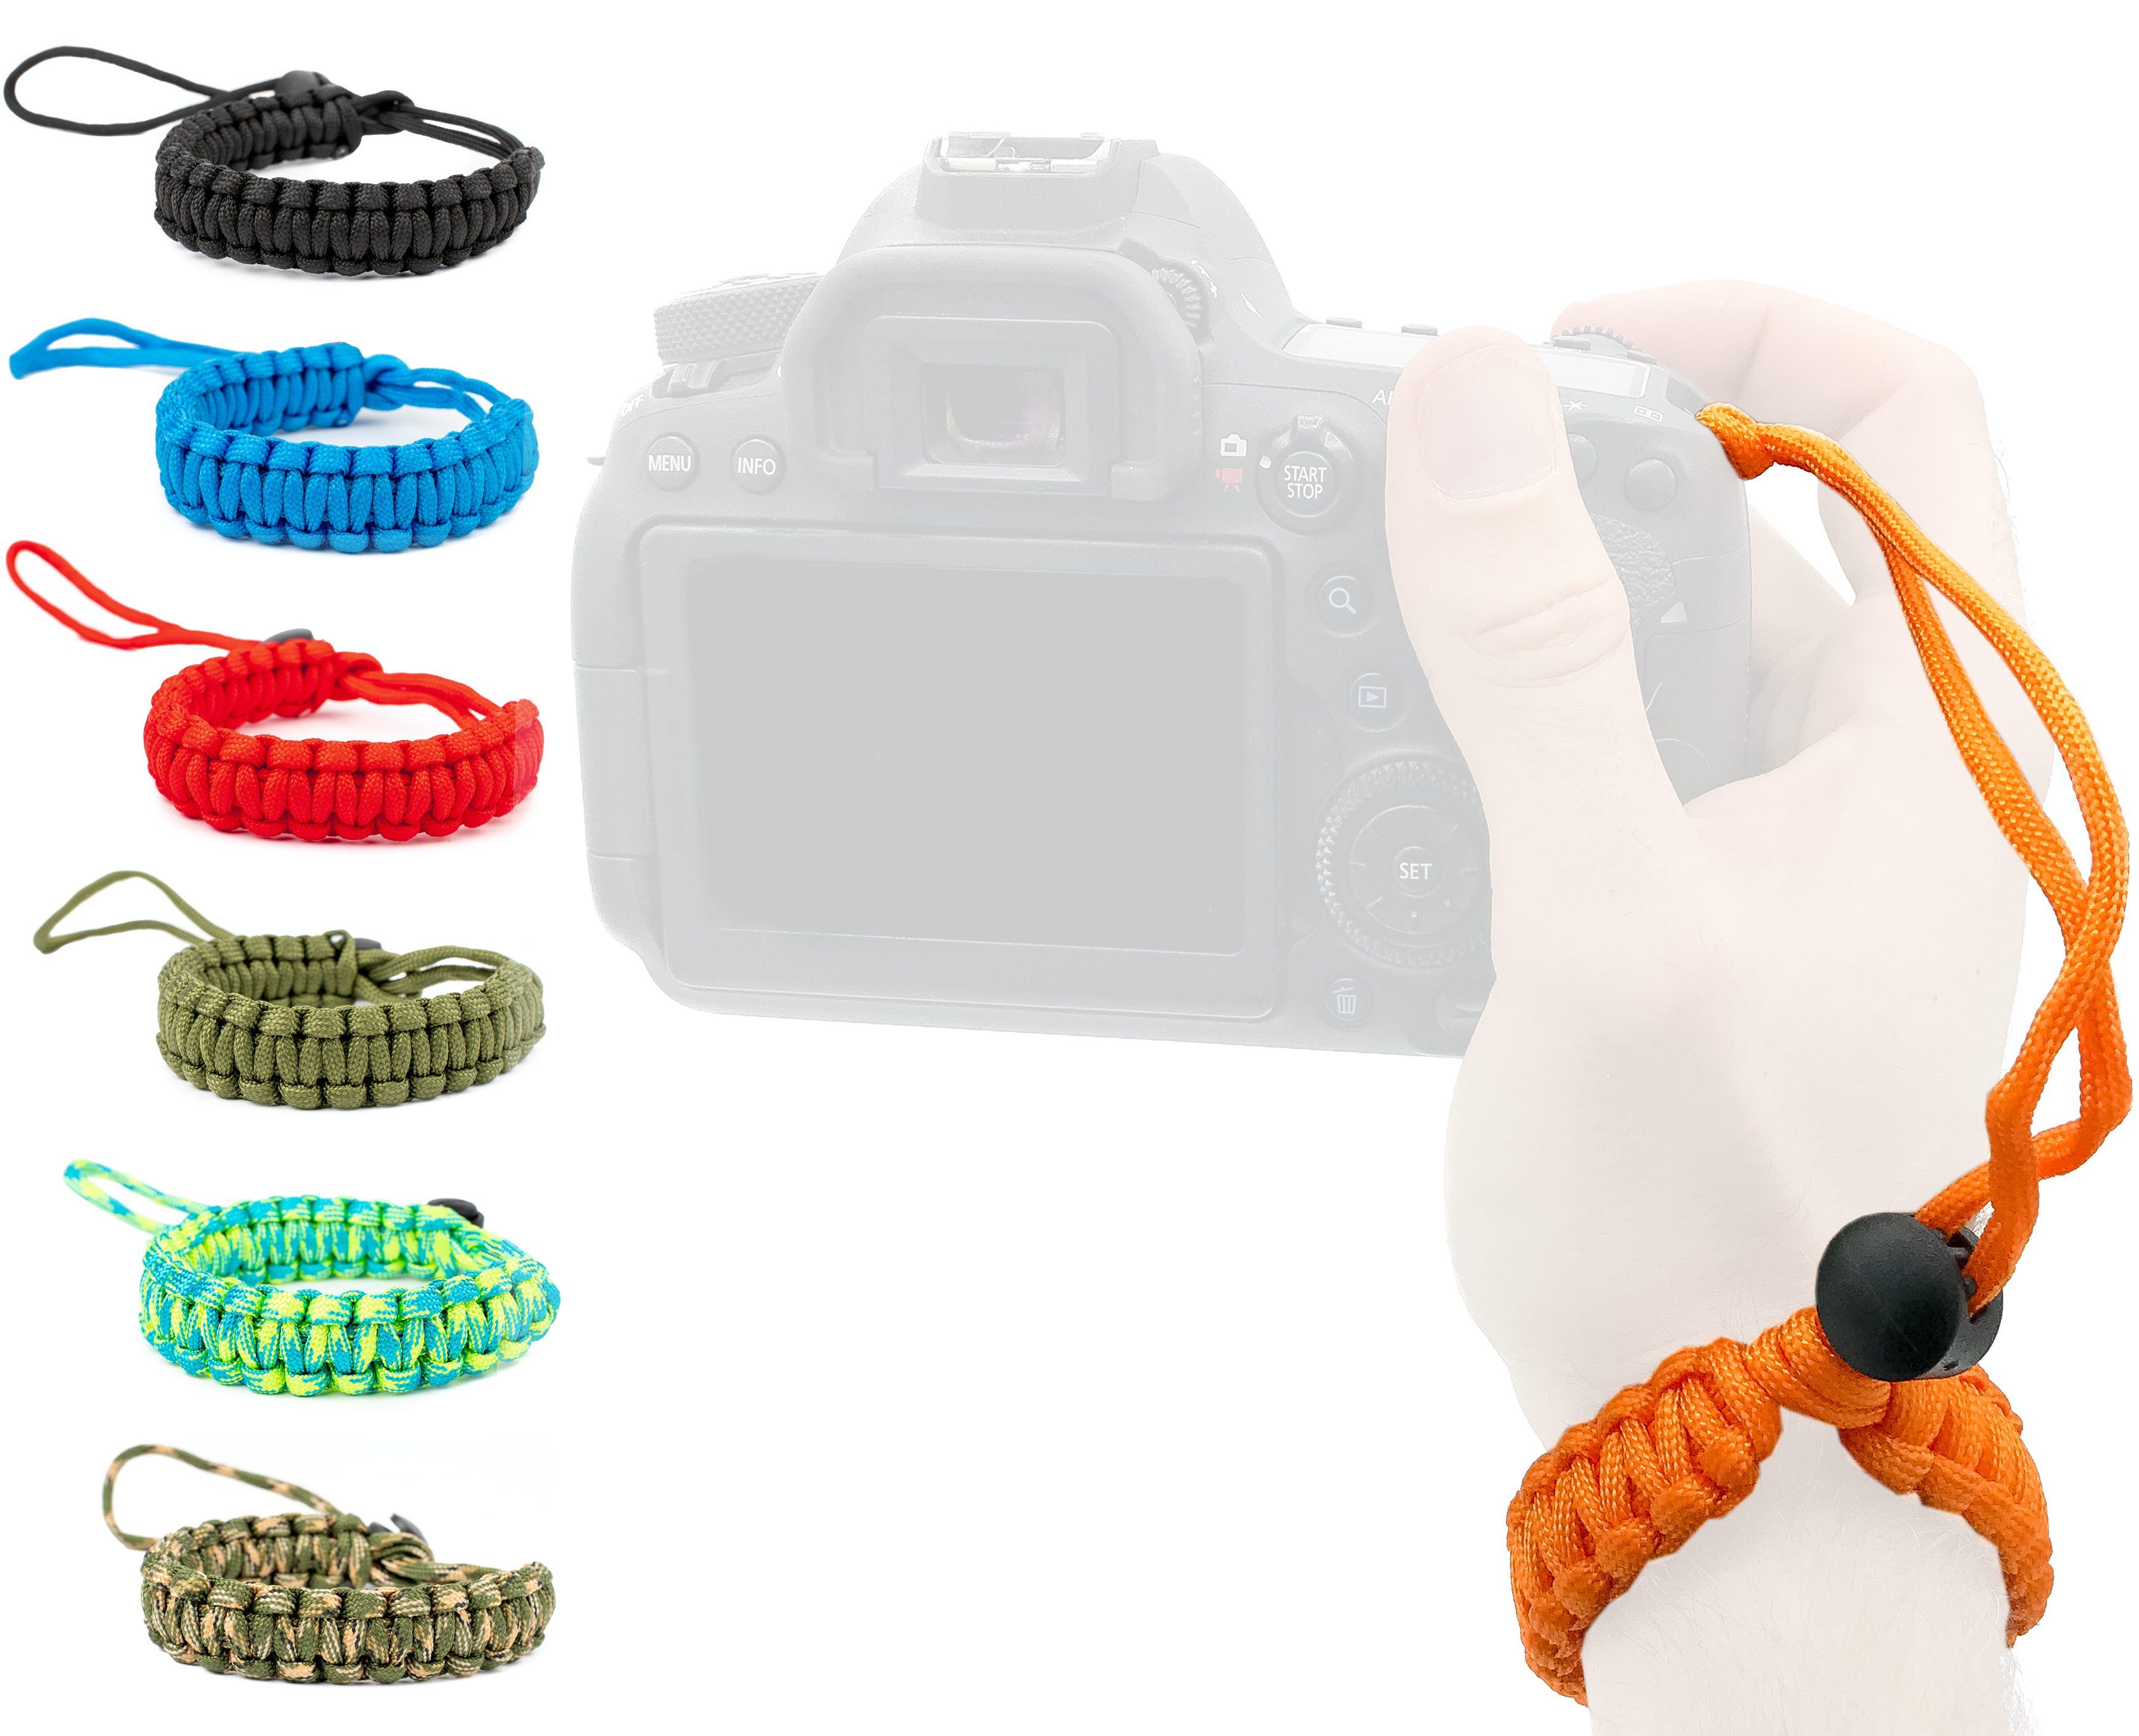 Lens-Aid Kamerazubehör-Set Handschlaufe für Wrist-Band Kordel Orange Tragen Paracord DSLR Tragegurt. am Kamera: Kameragurt zum Handgelenk